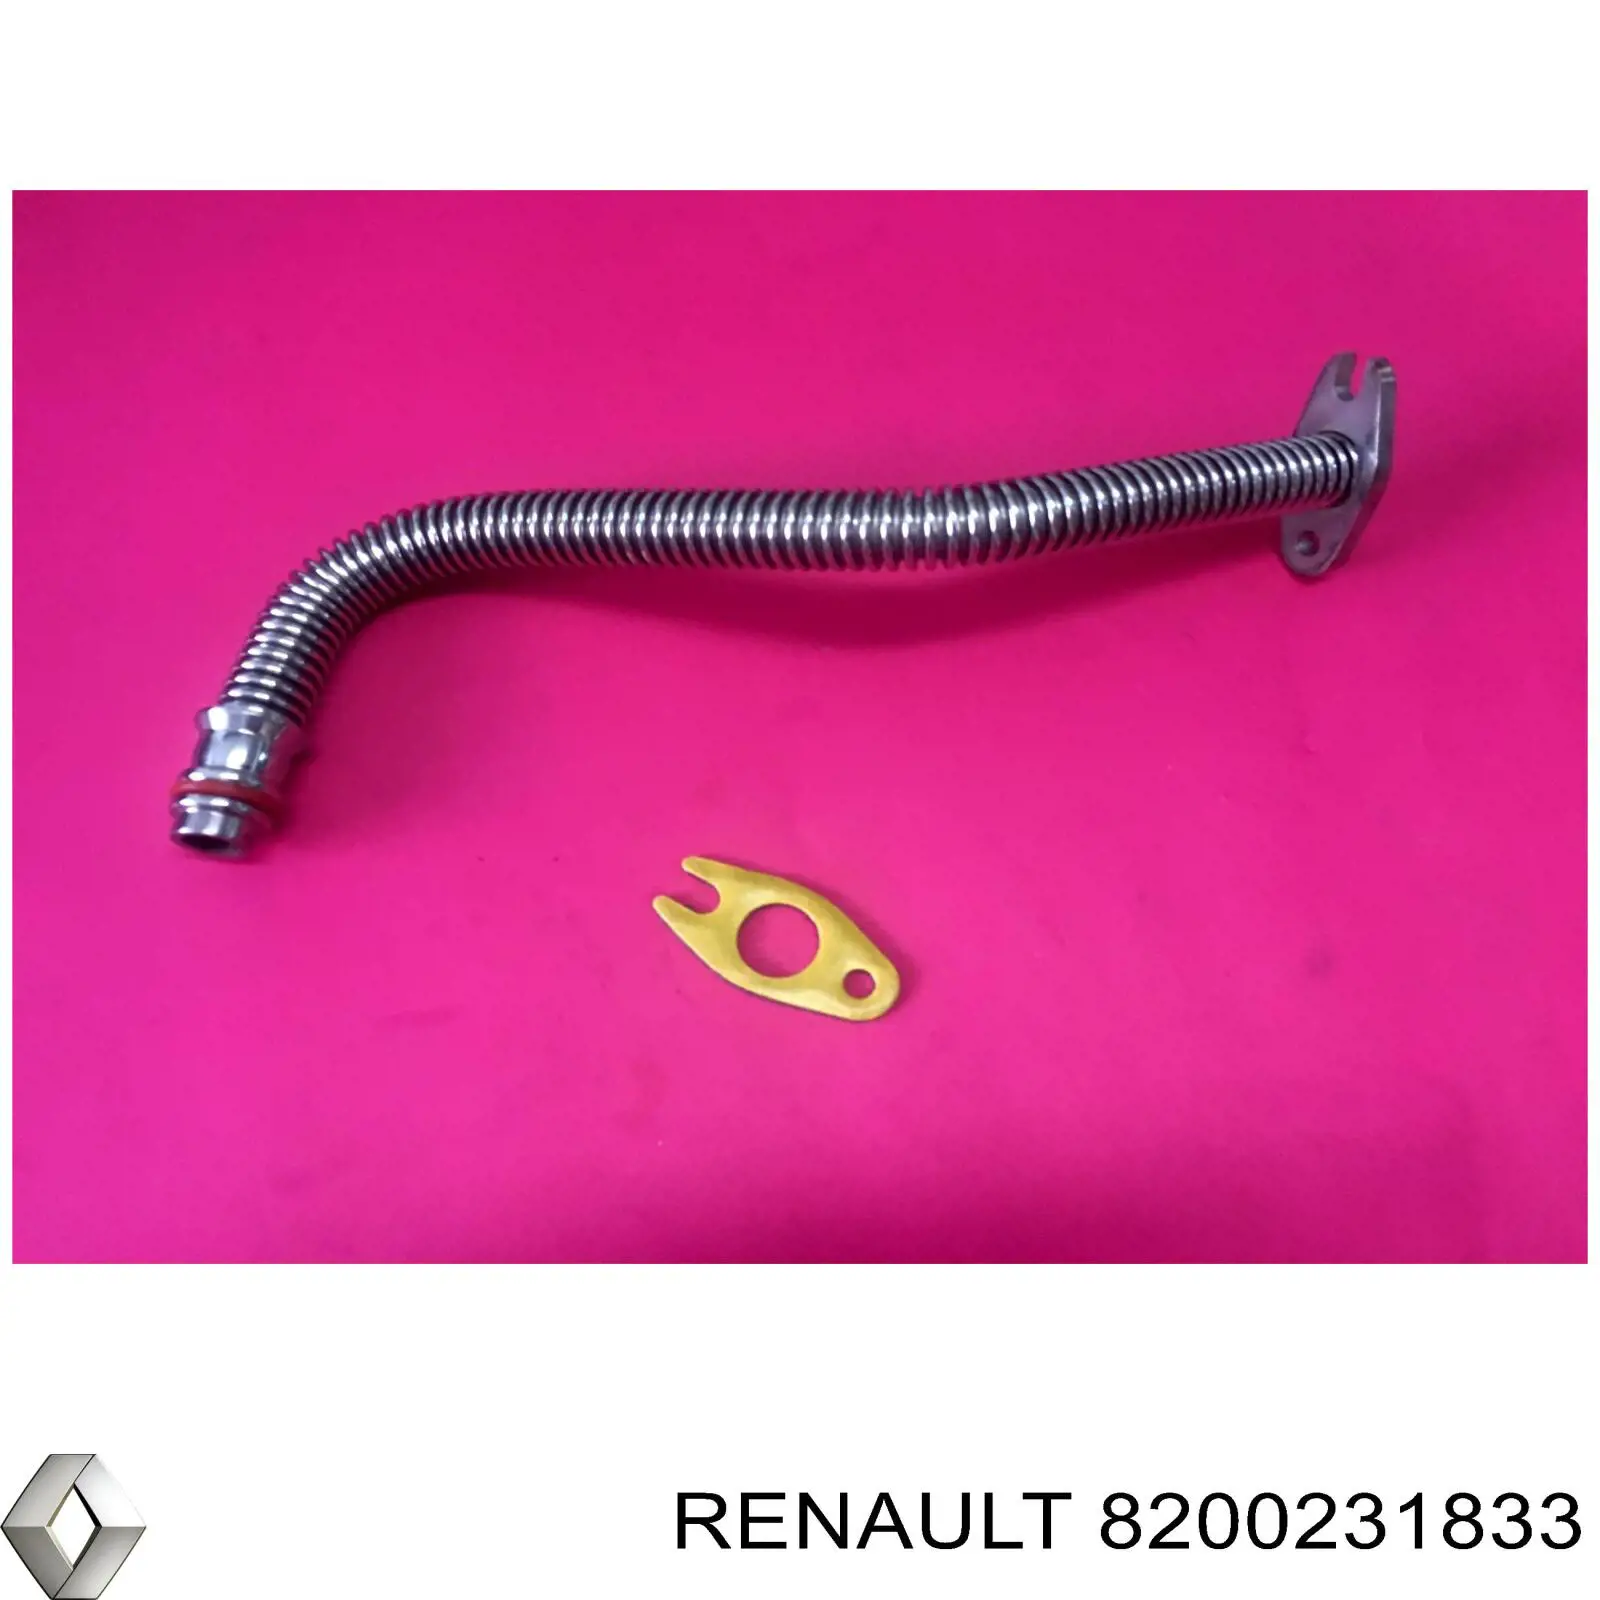 8200231833 Renault (RVI) tubo (manguera Para Drenar El Aceite De Una Turbina)